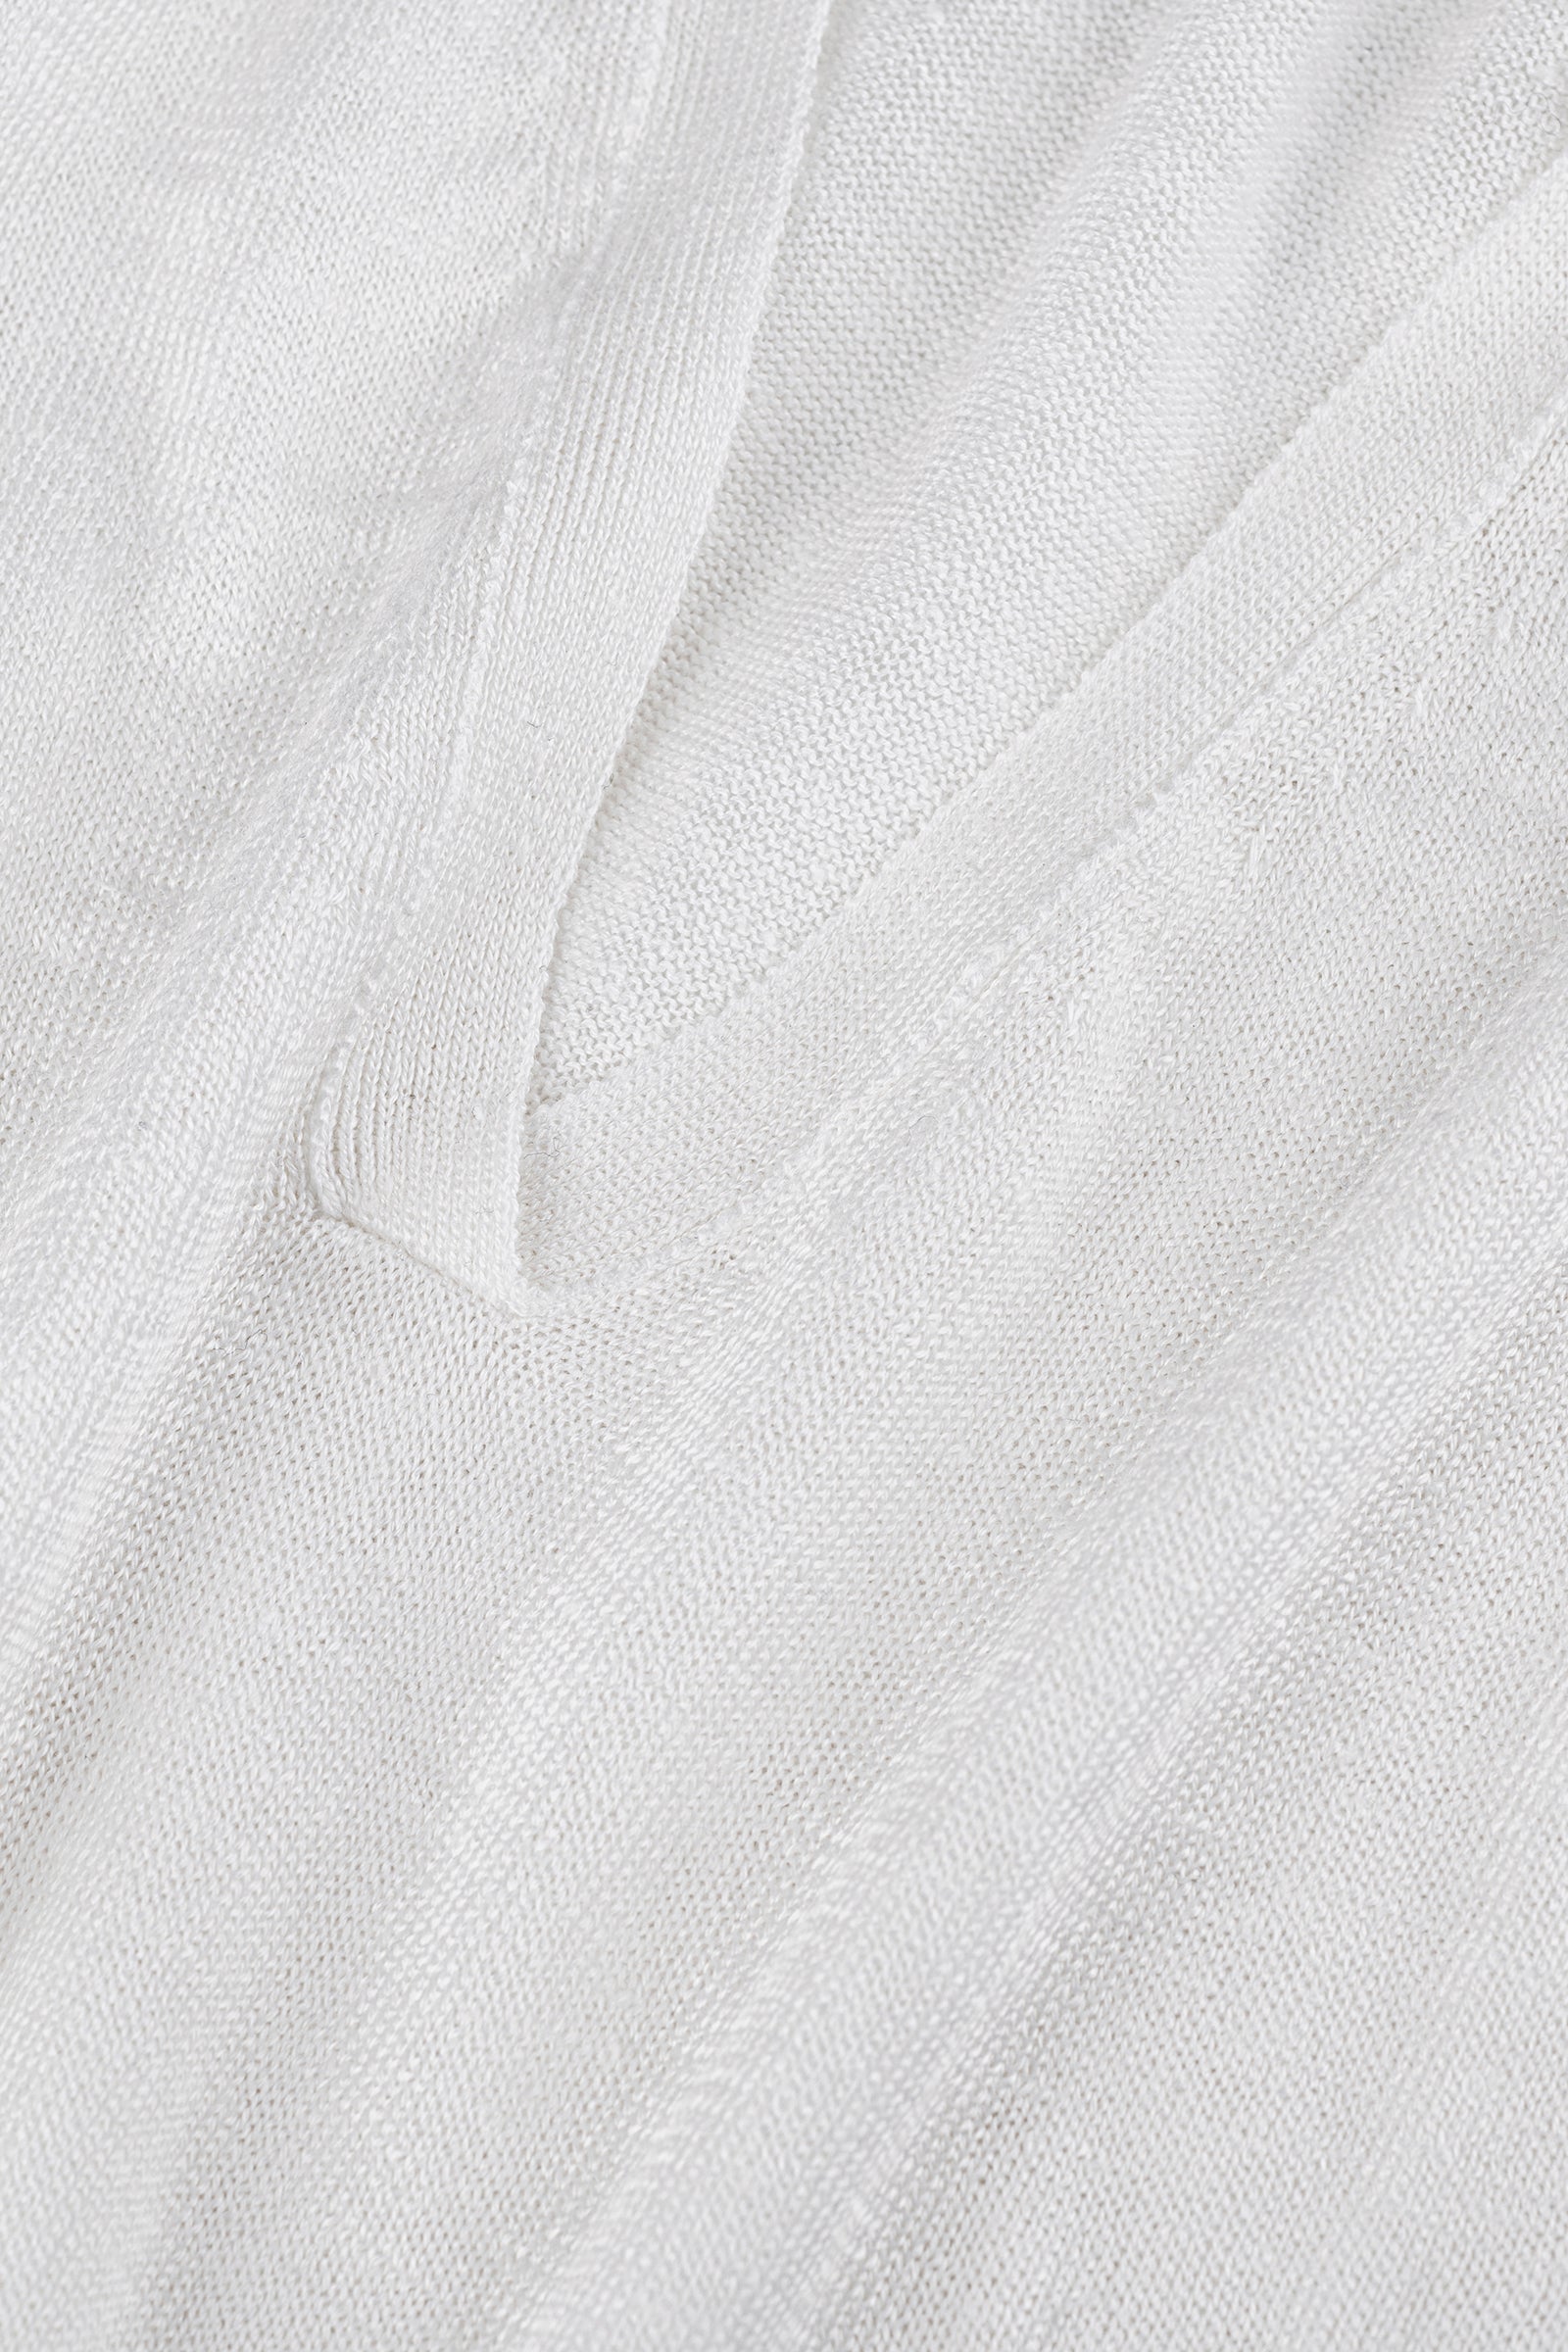 polo miami 100% Capri white linen polo detail